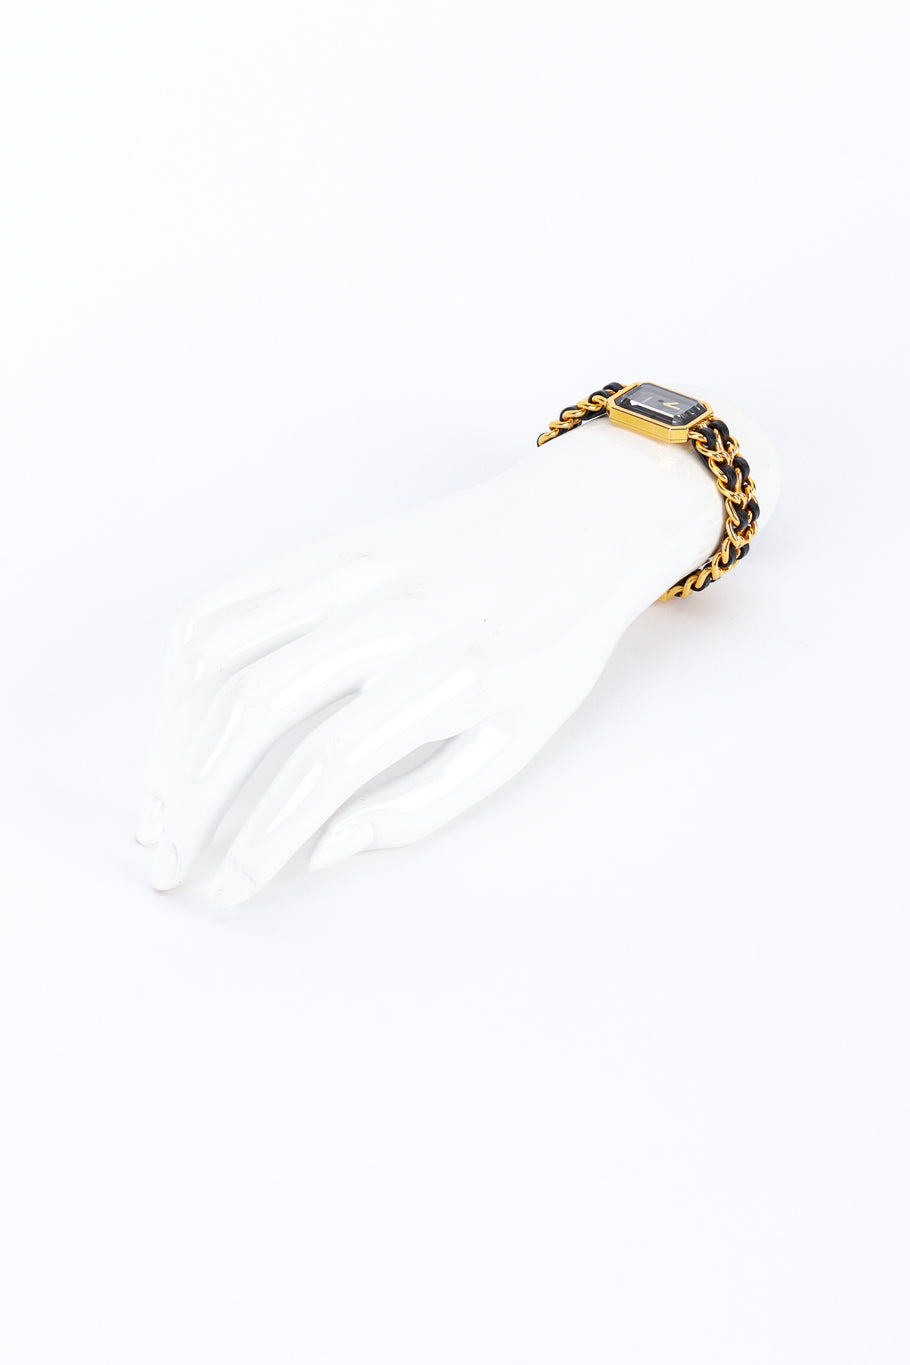 Premier Chain Bracelet Watch by Chanel on wrist @RECESS LA